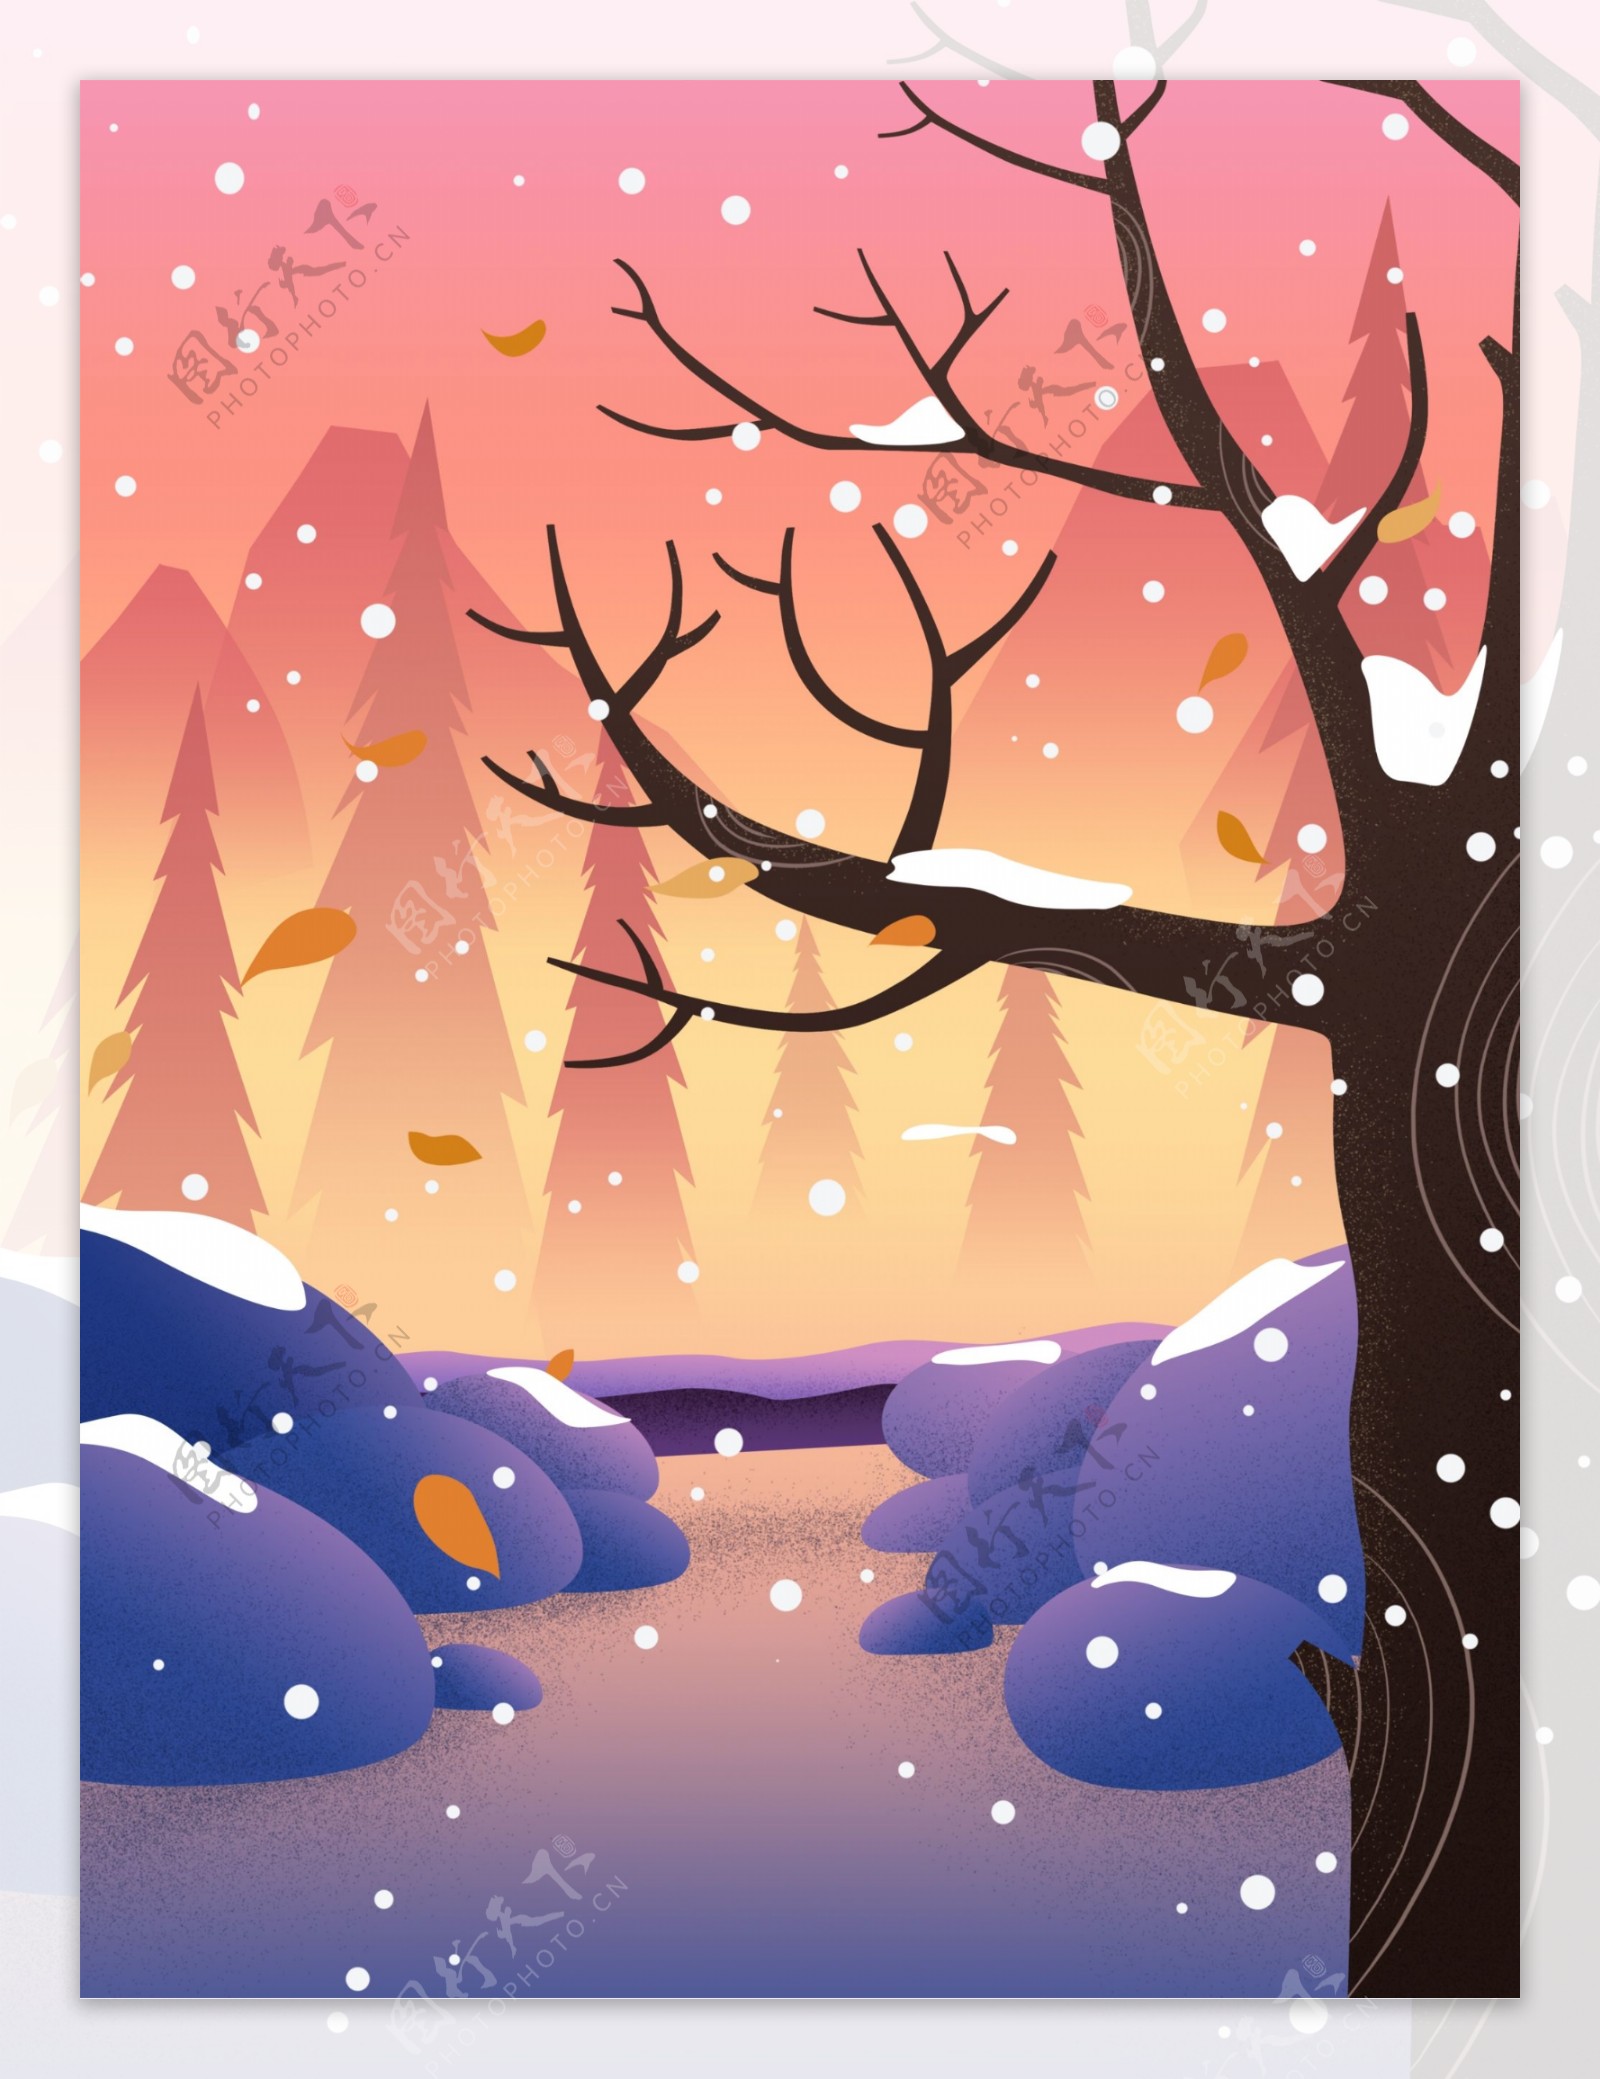 冬季森林风景插画背景